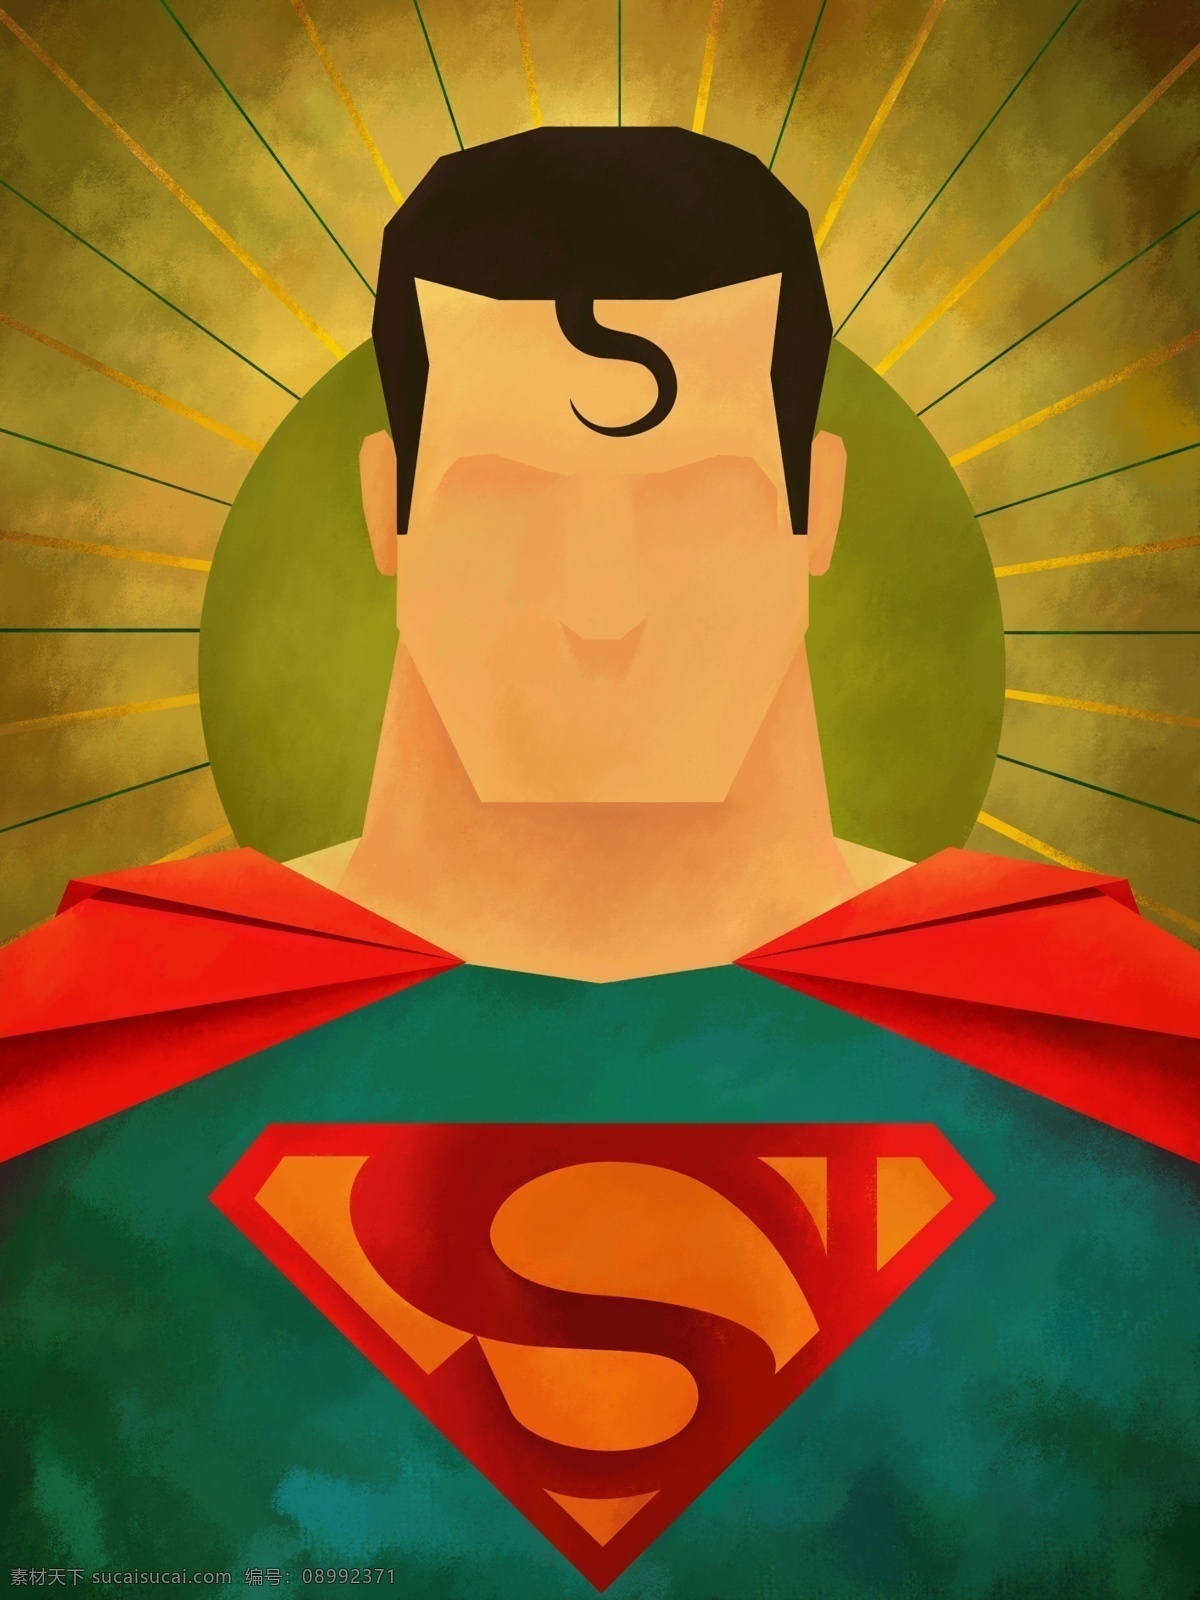 漫 威 dc 漫画 超级 英雄 装饰 桌面 画 超人 漫威 超级英雄 卡通 创意 装饰画 壁纸 高清 文化艺术 绘画书法